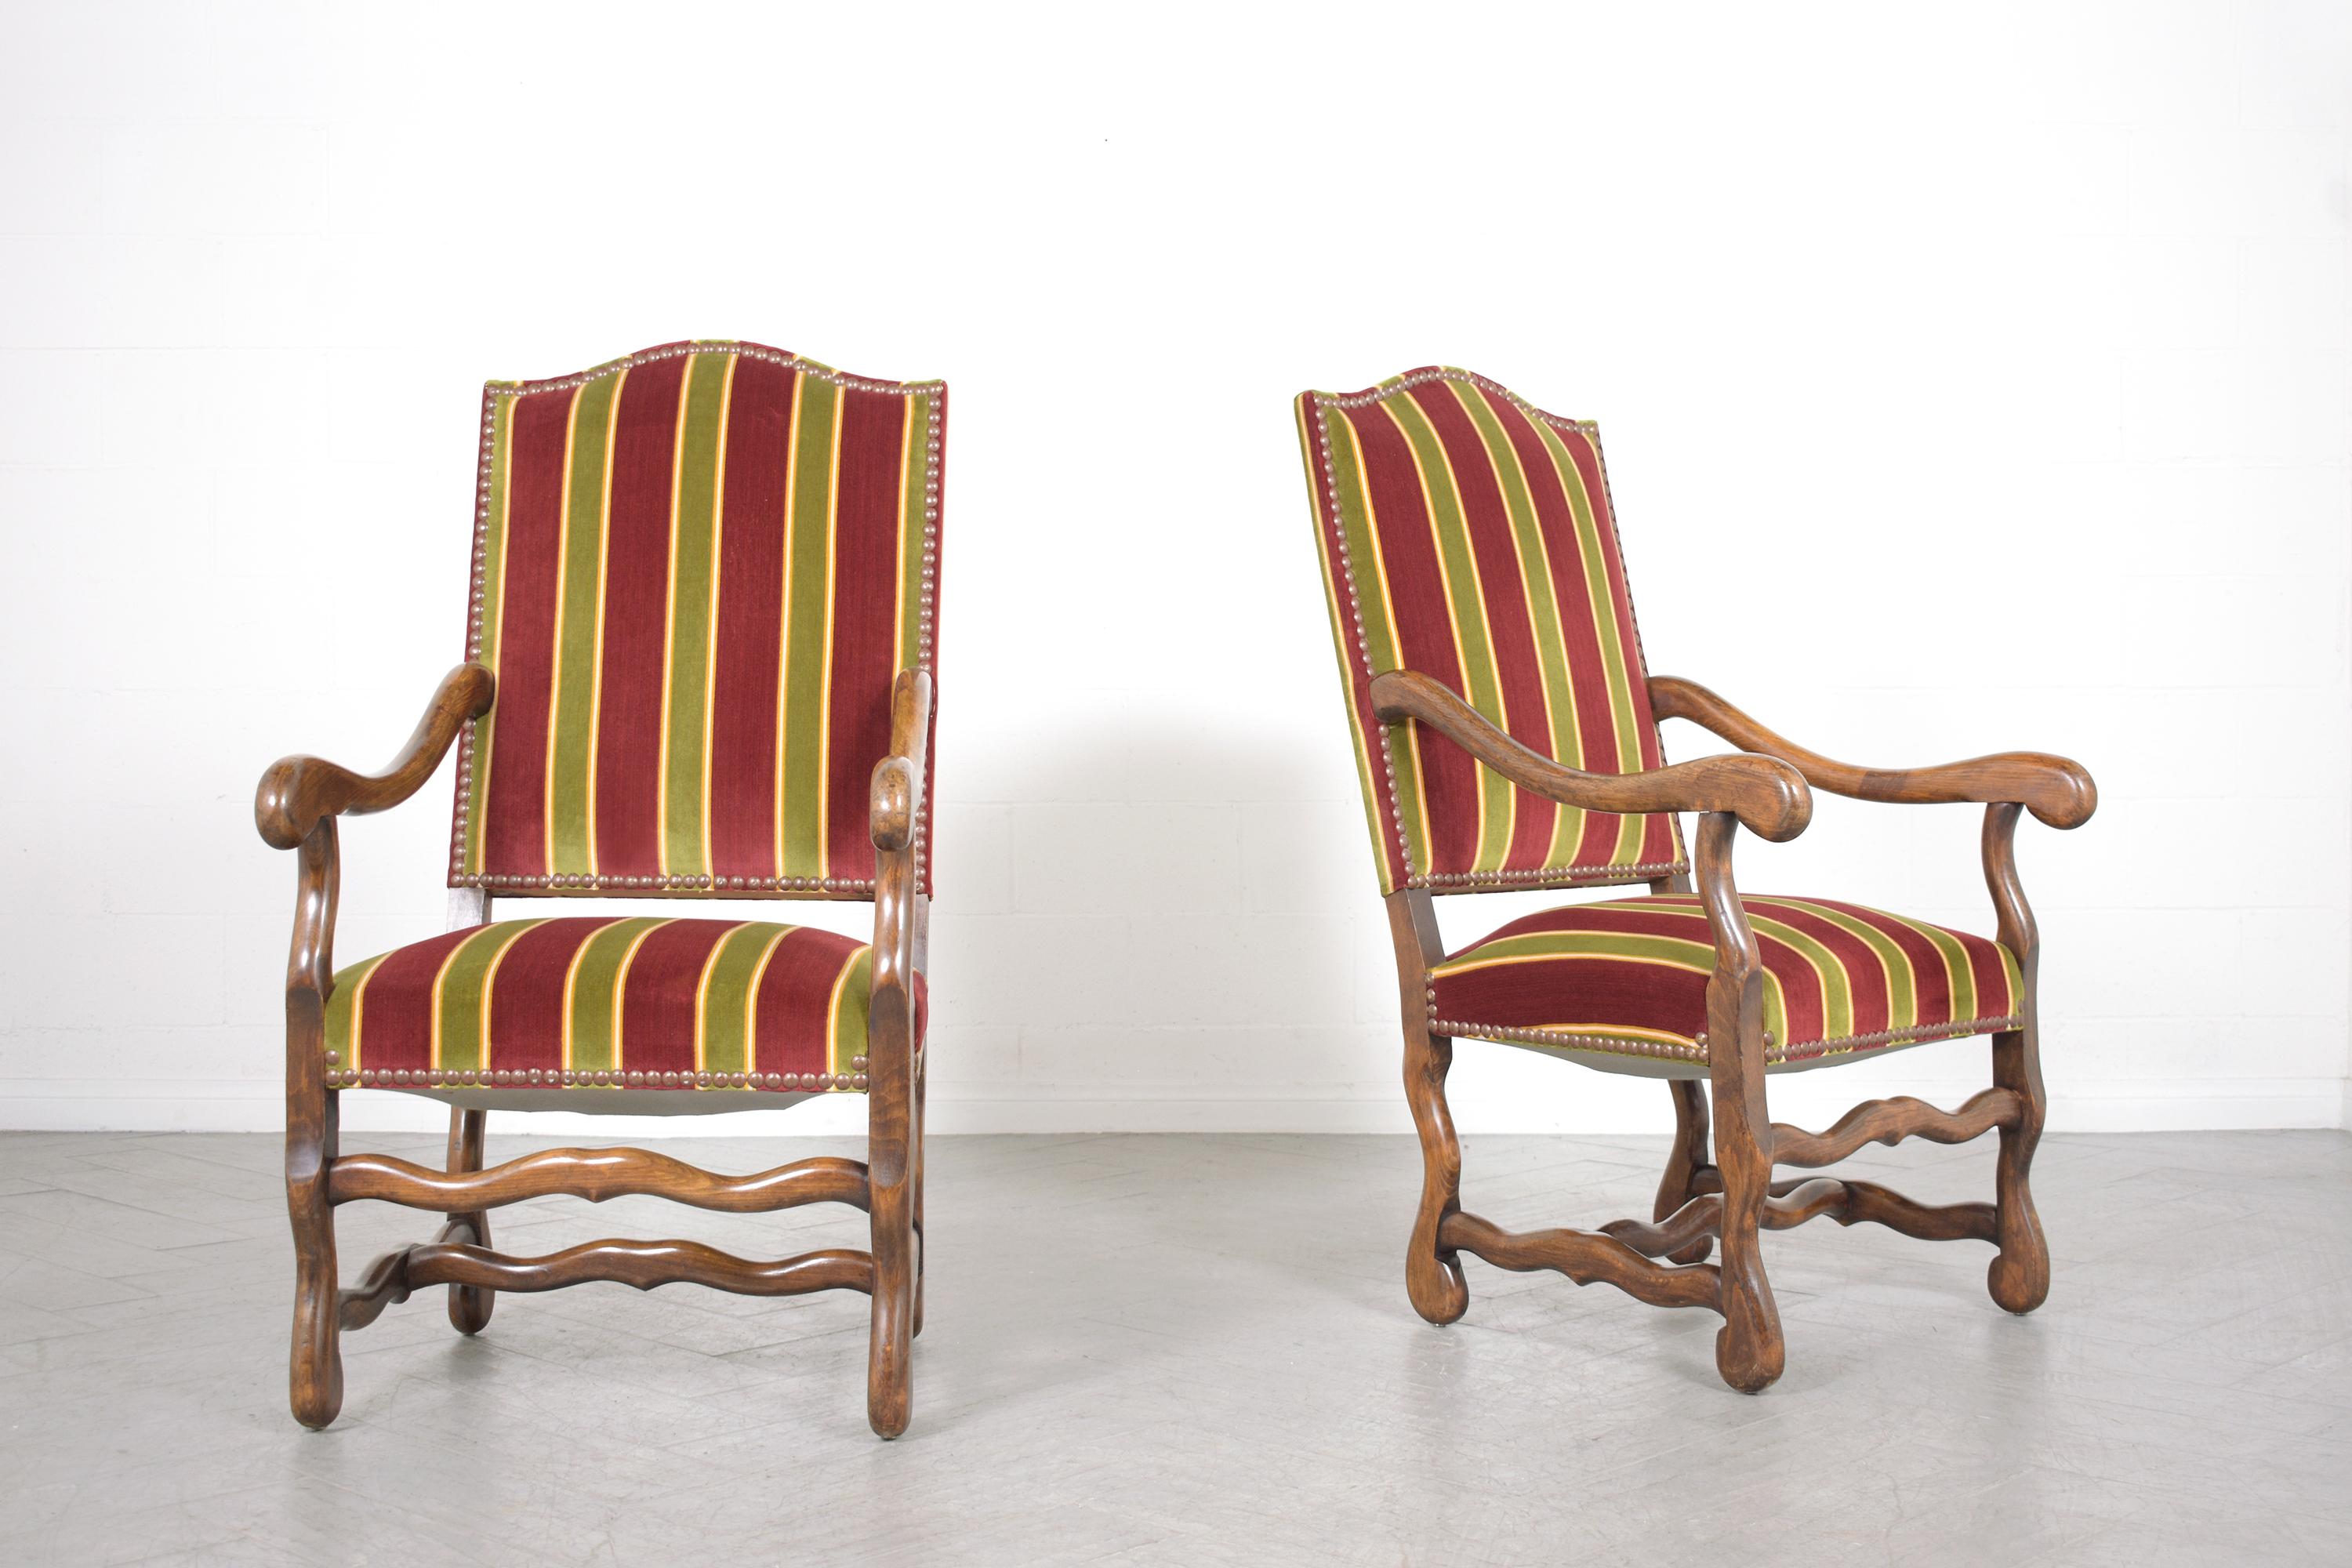 Versetzen Sie sich in die Grandeur des späten 19. Jahrhunderts mit unserem exquisiten Paar französischer Sessel, die in sorgfältiger Handarbeit aus Massivholz gefertigt wurden. Jeder Stuhl, der außergewöhnliche Handwerkskunst widerspiegelt, befindet